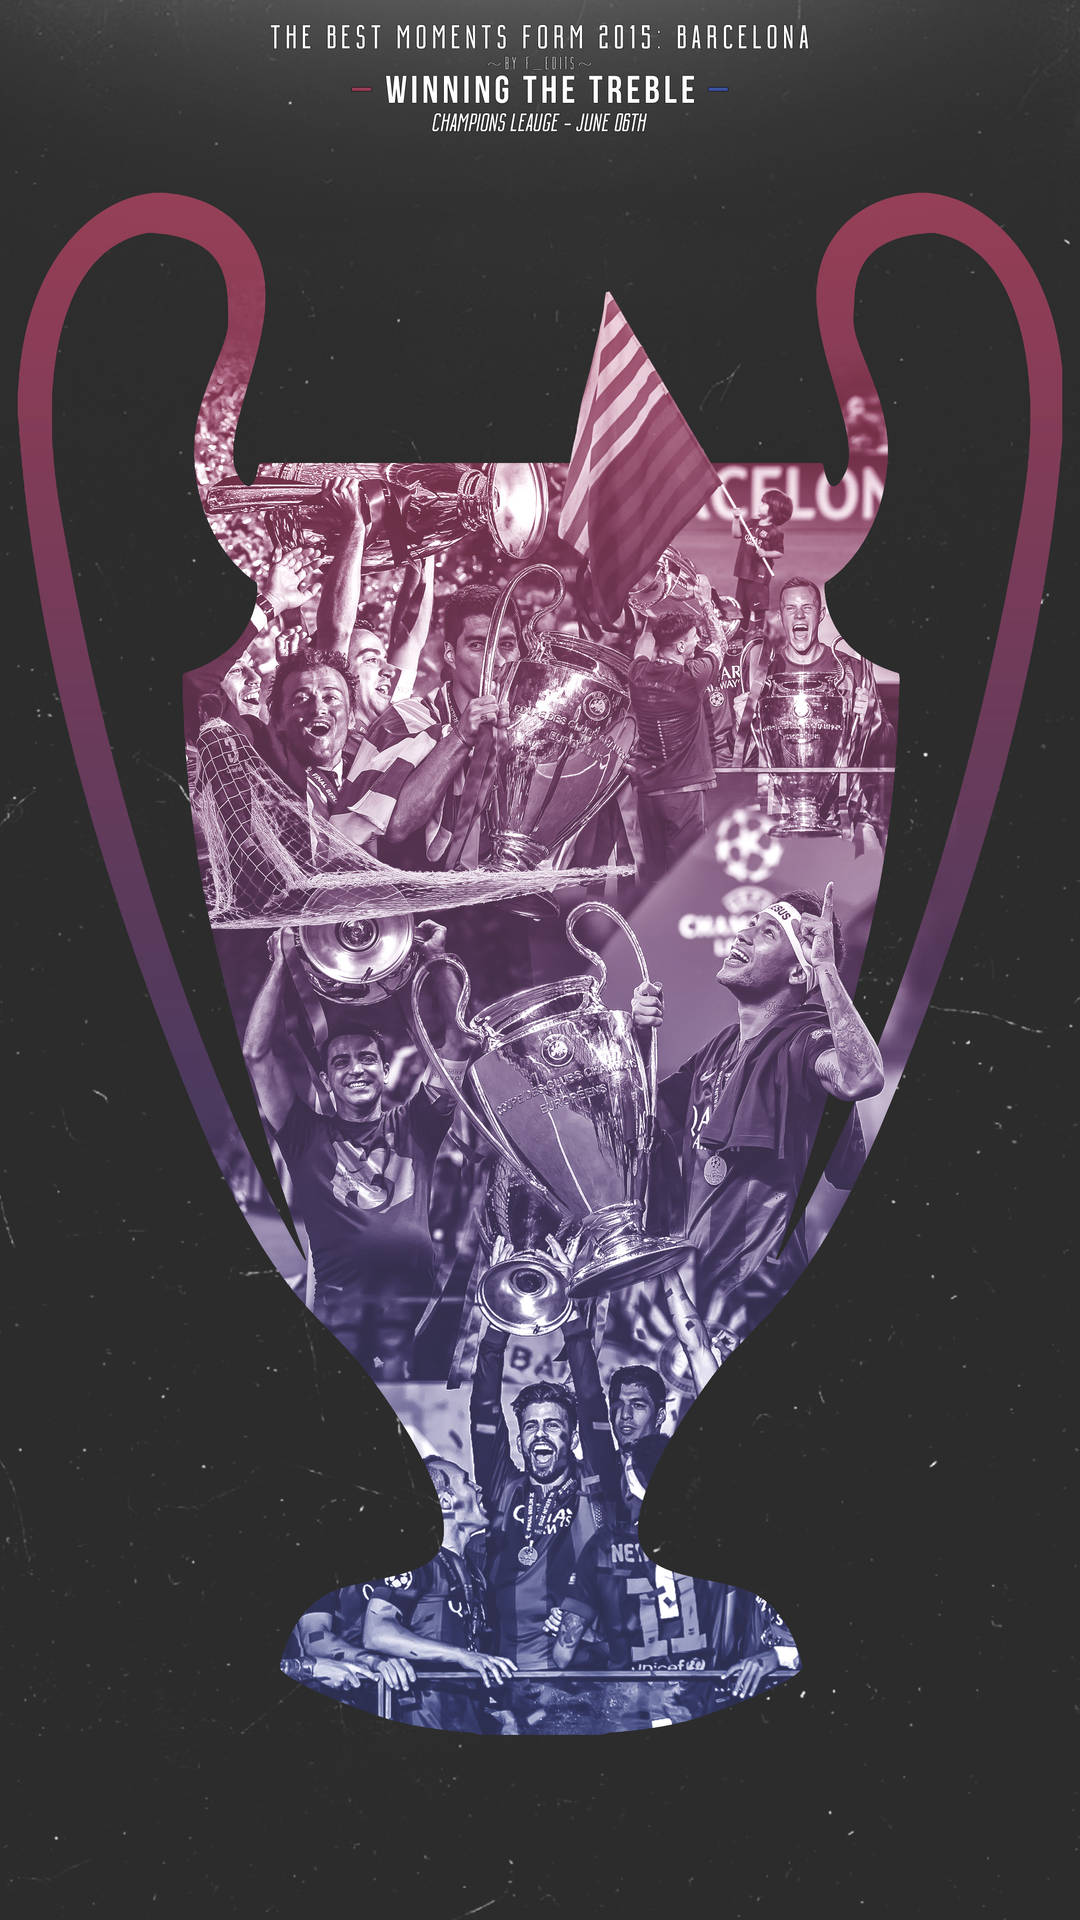 Fcbtreble 2015 Champions League (fcb Triple 2015 Champions League) Wallpaper